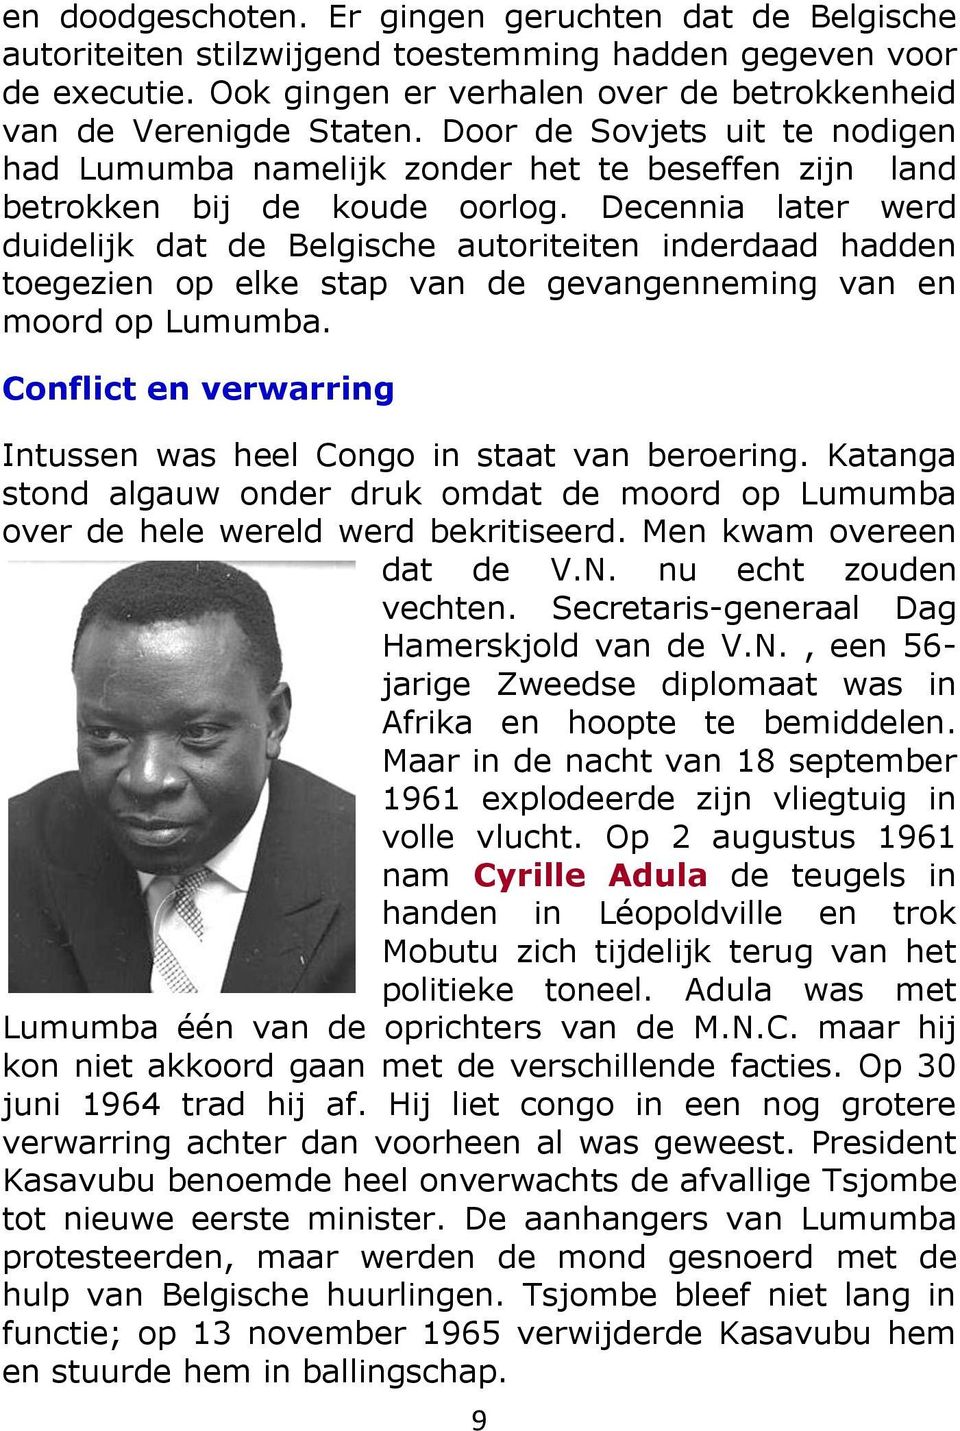 Decennia later werd duidelijk dat de Belgische autoriteiten inderdaad hadden toegezien op elke stap van de gevangenneming van en moord op Lumumba.